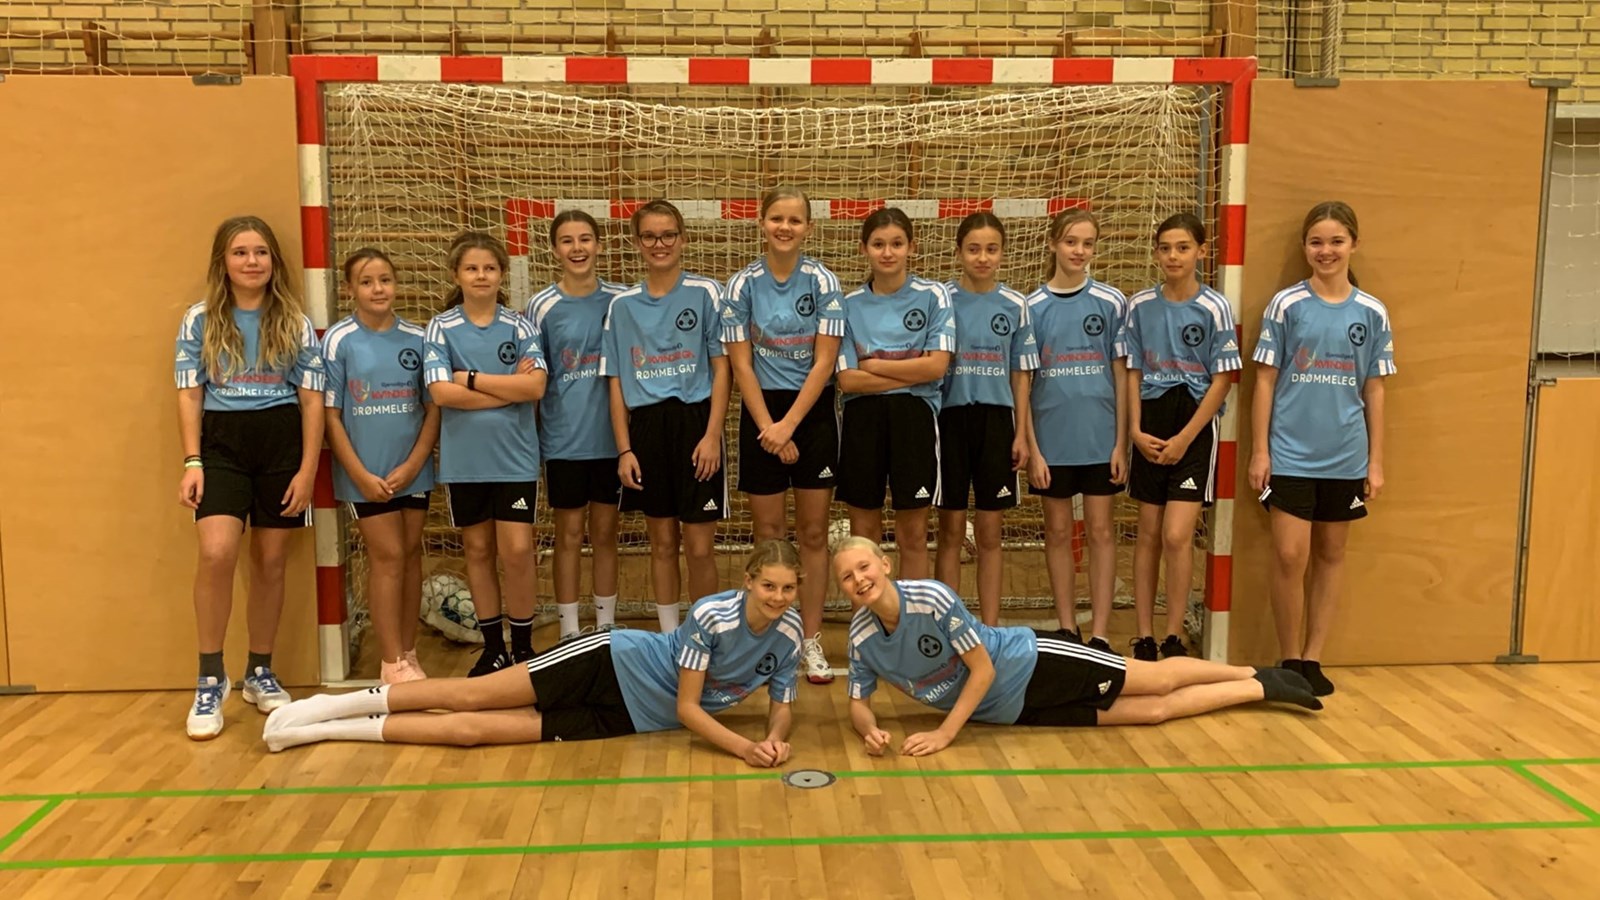 SSV Højfyn: Drømmelegat understøtter ønske om vækst i klubbens pigefodbold